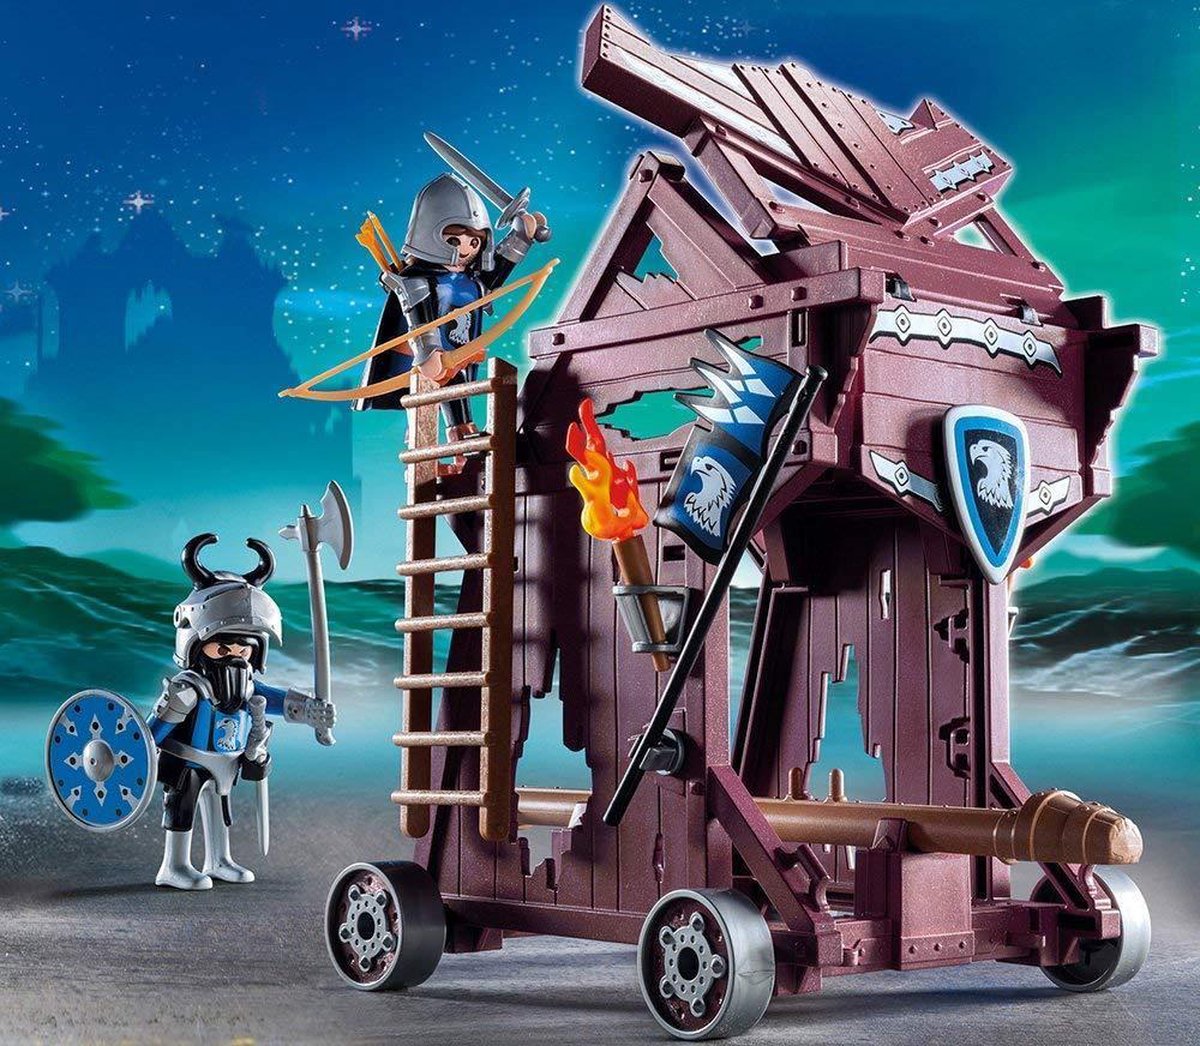 Playmobil Aanvalstoren van de Valkenridders - 6628 | bol.com